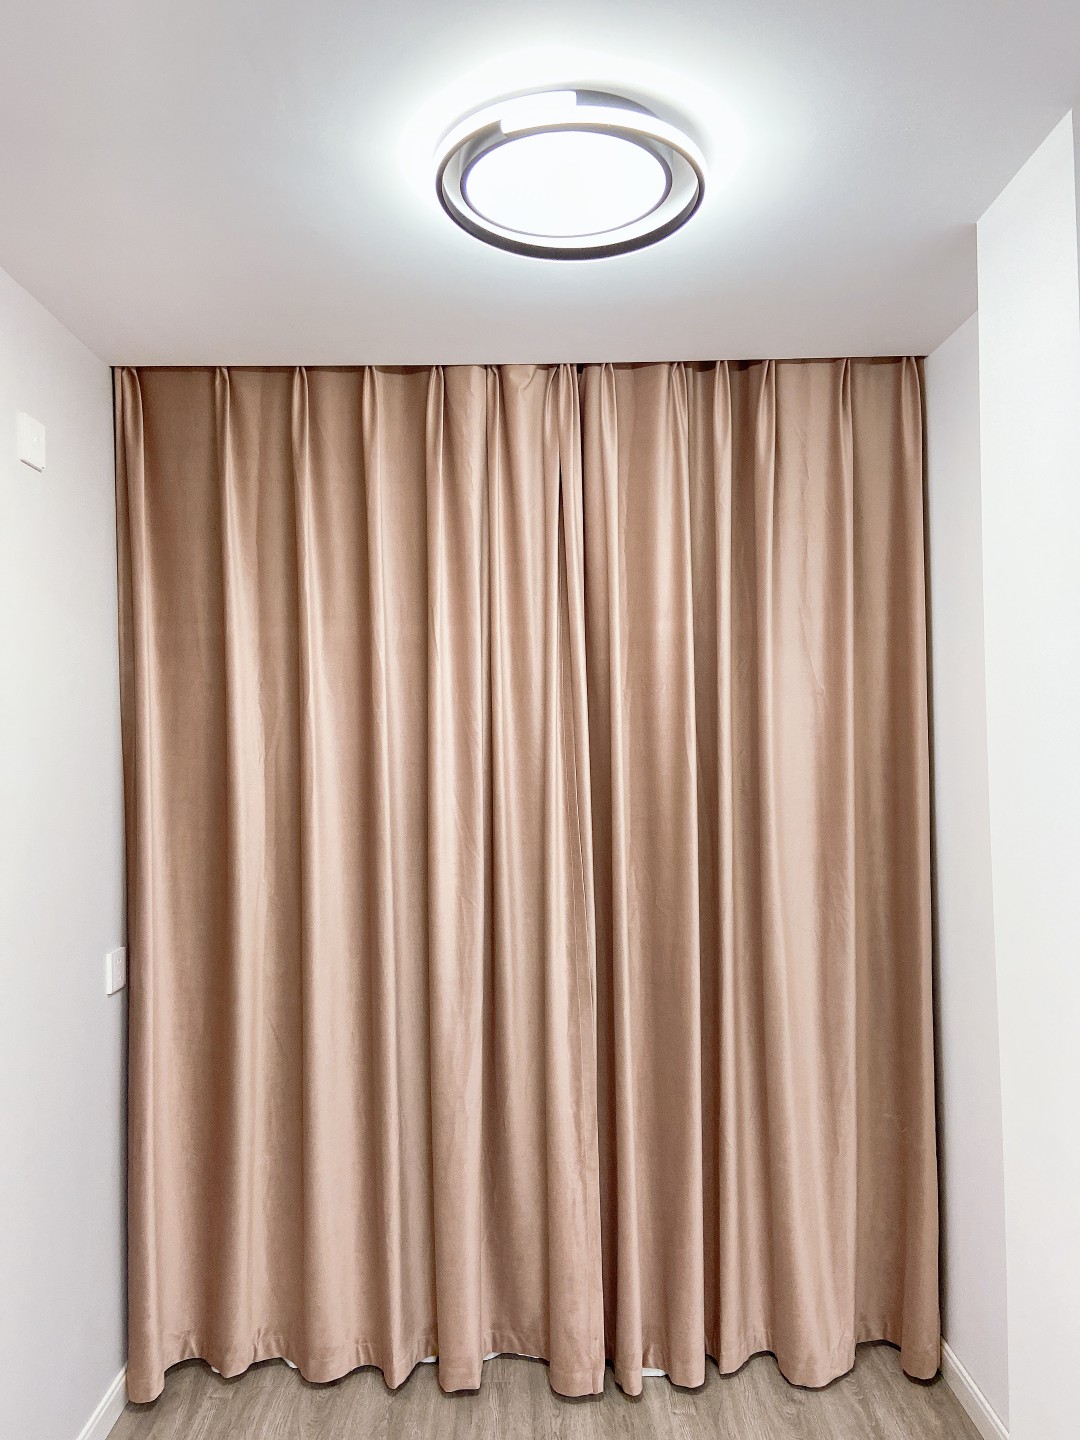 卧室全遮光窗帘制作安装(图4)